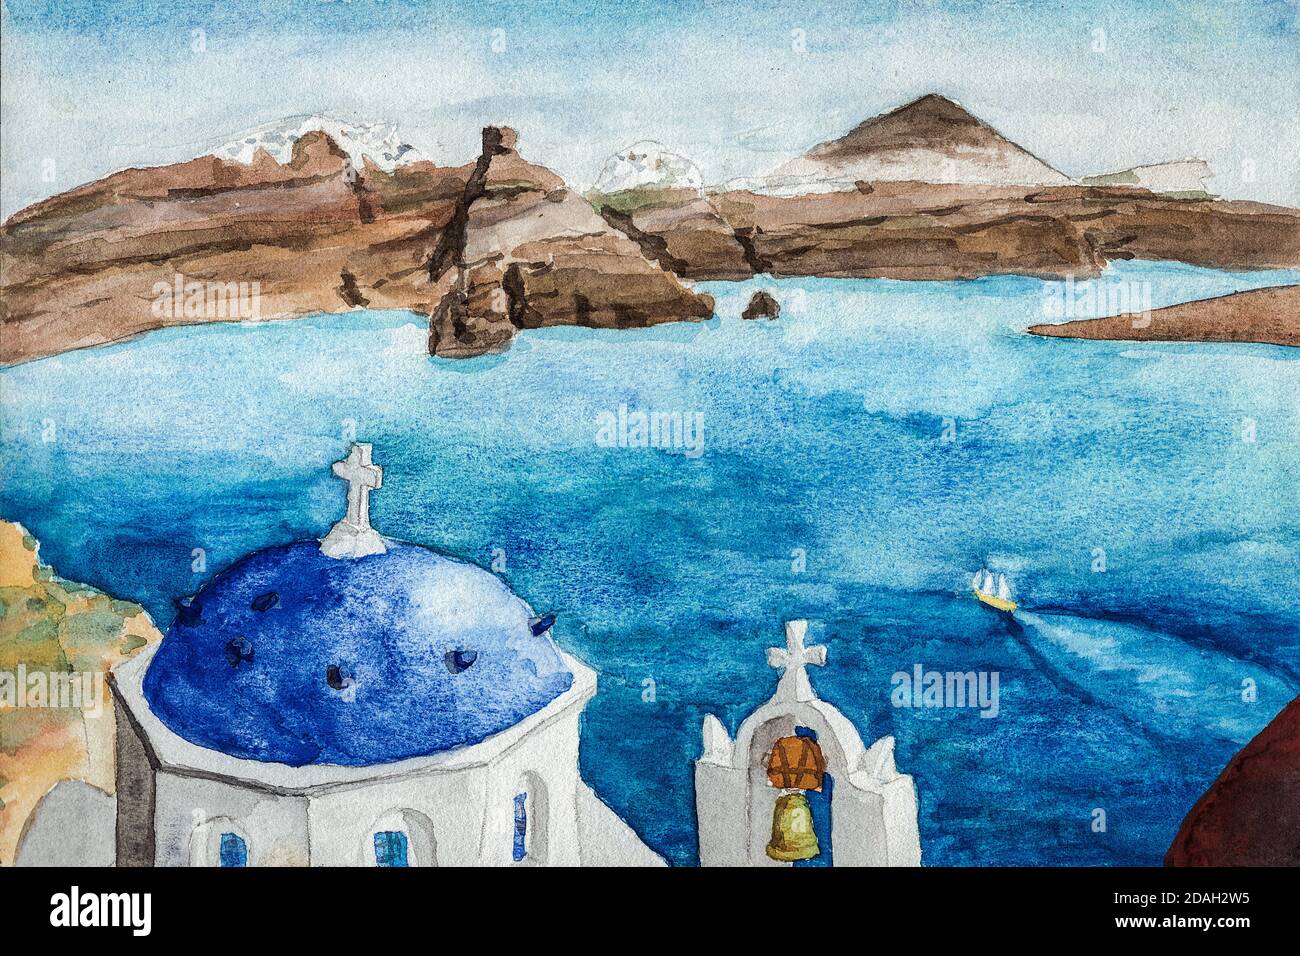 Dôme bleu typique et cloche de l'église orthodoxe de l'île de Santorini. Une île volcanique dans la mer Égée, dans le sud de la Grèce. Aquarelle. Banque D'Images